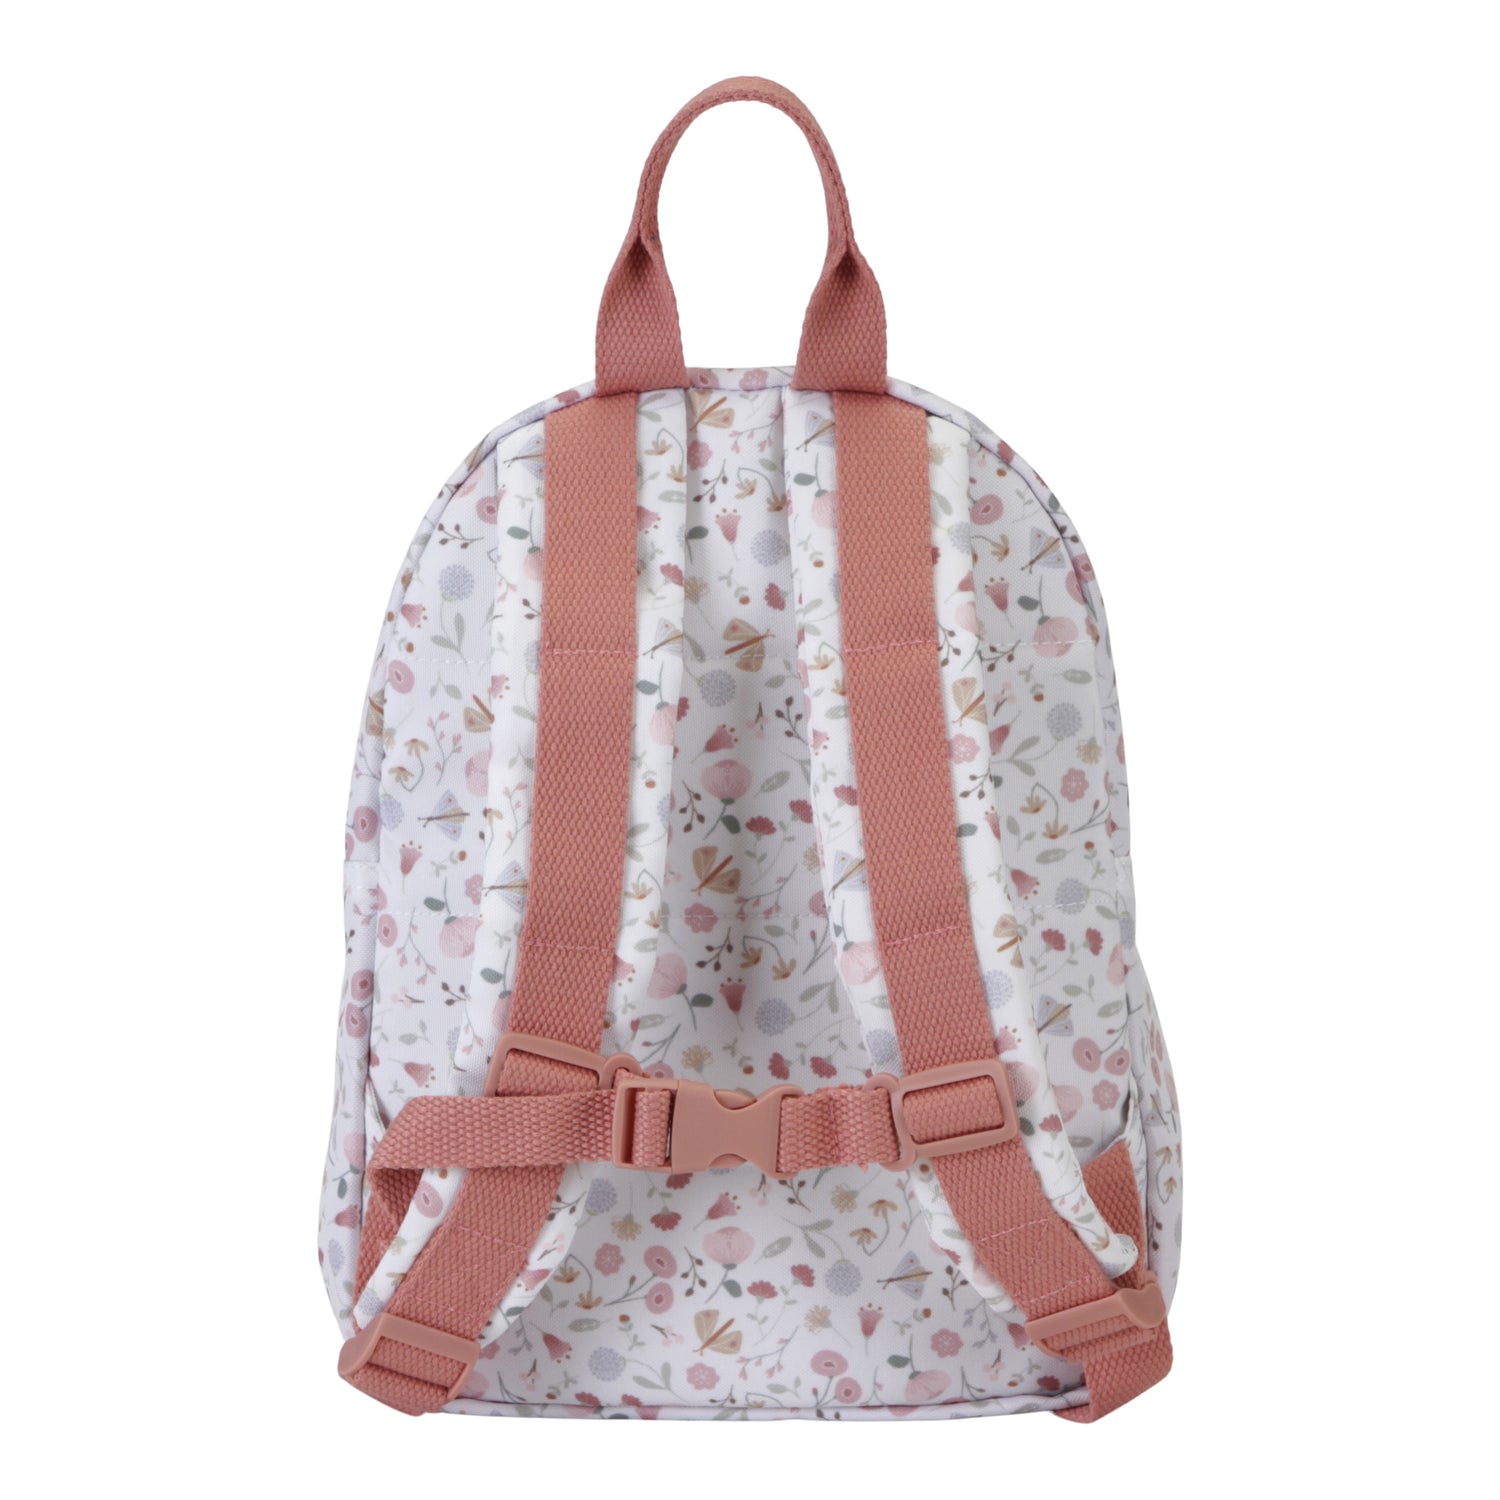 Little Dutch Kids backpack - Flowers and Butterflies